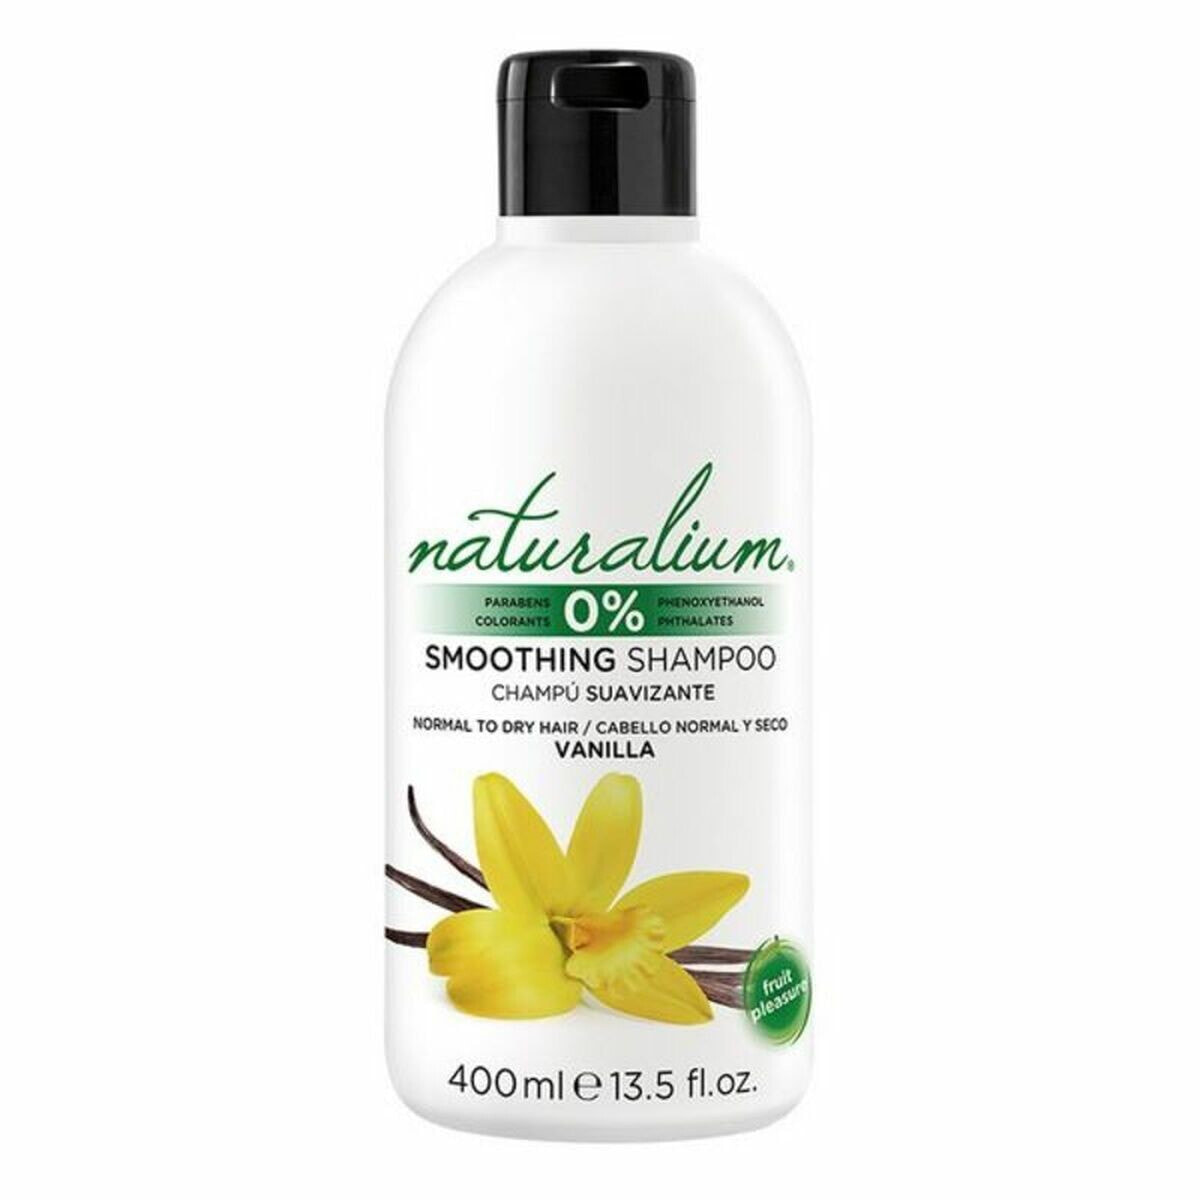 Moisturizing Shampoo Naturalium 400 ml Vanilla